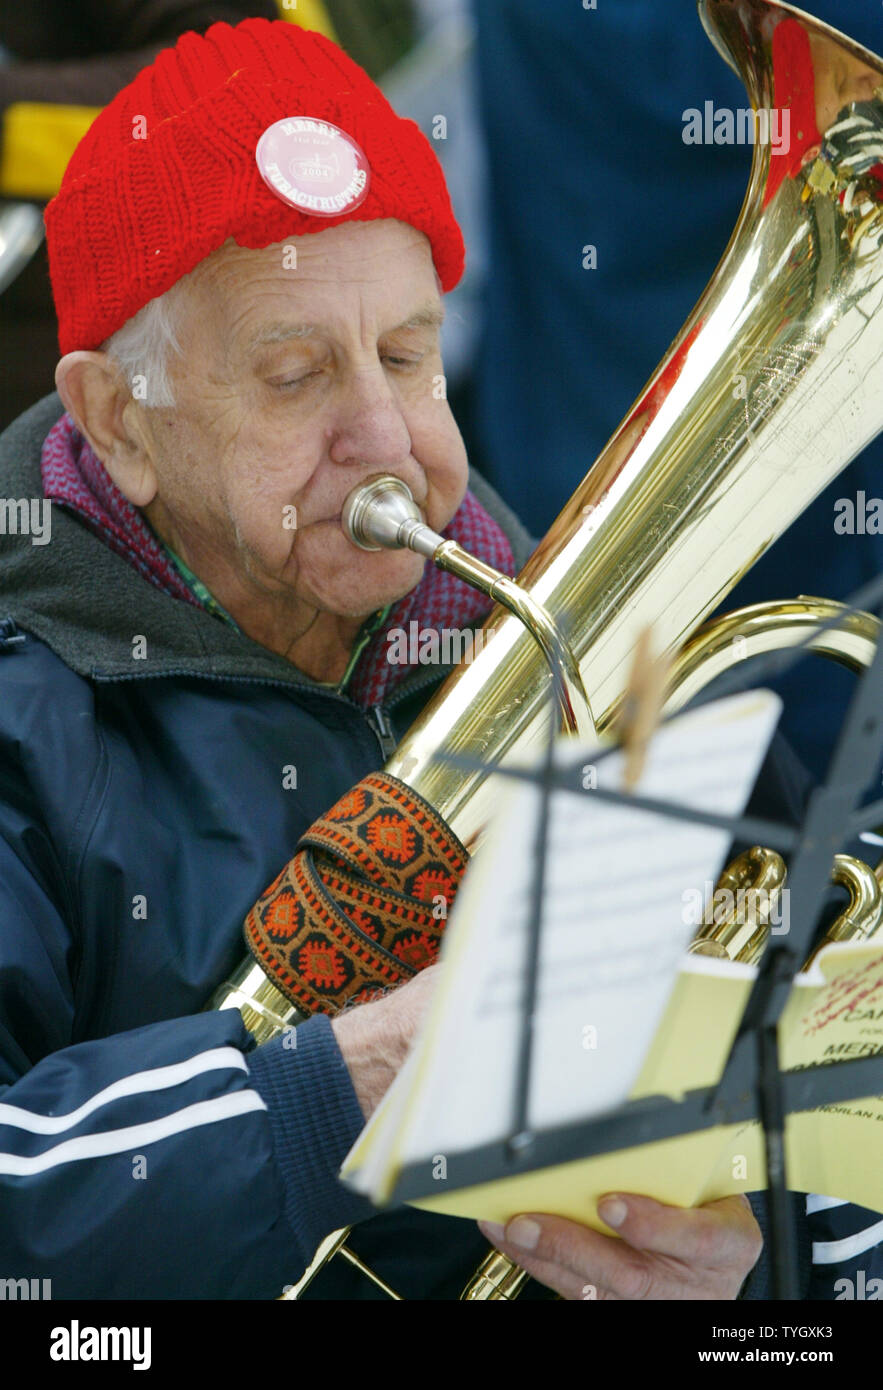 George Wenderoth, 82, ist der älteste unter den 450 Tubisten, Weihnachtslieder während der "Merry Tuba Christmas' Konzert am Rockefeller Center in New York City am 12. Dezember 2004 in New York City spielen. (UPI Foto/Monika Graff) Stockfoto